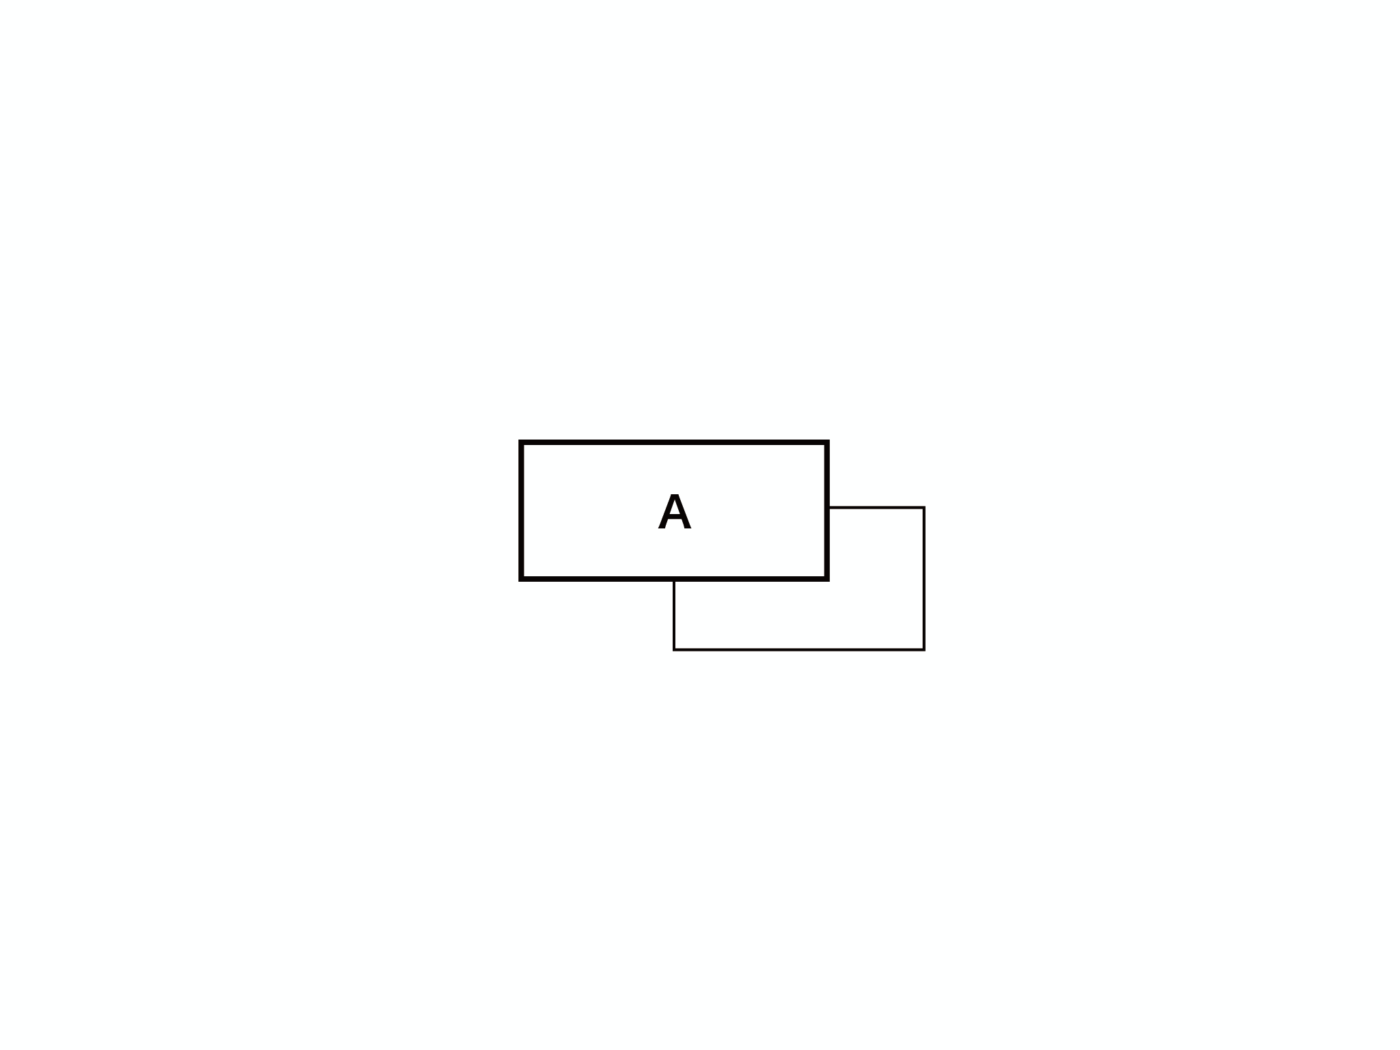 再帰することを示す図。四角の中にAと書かれていて、四角から線が出ていてぐるっとまた四角に線がつながっている。